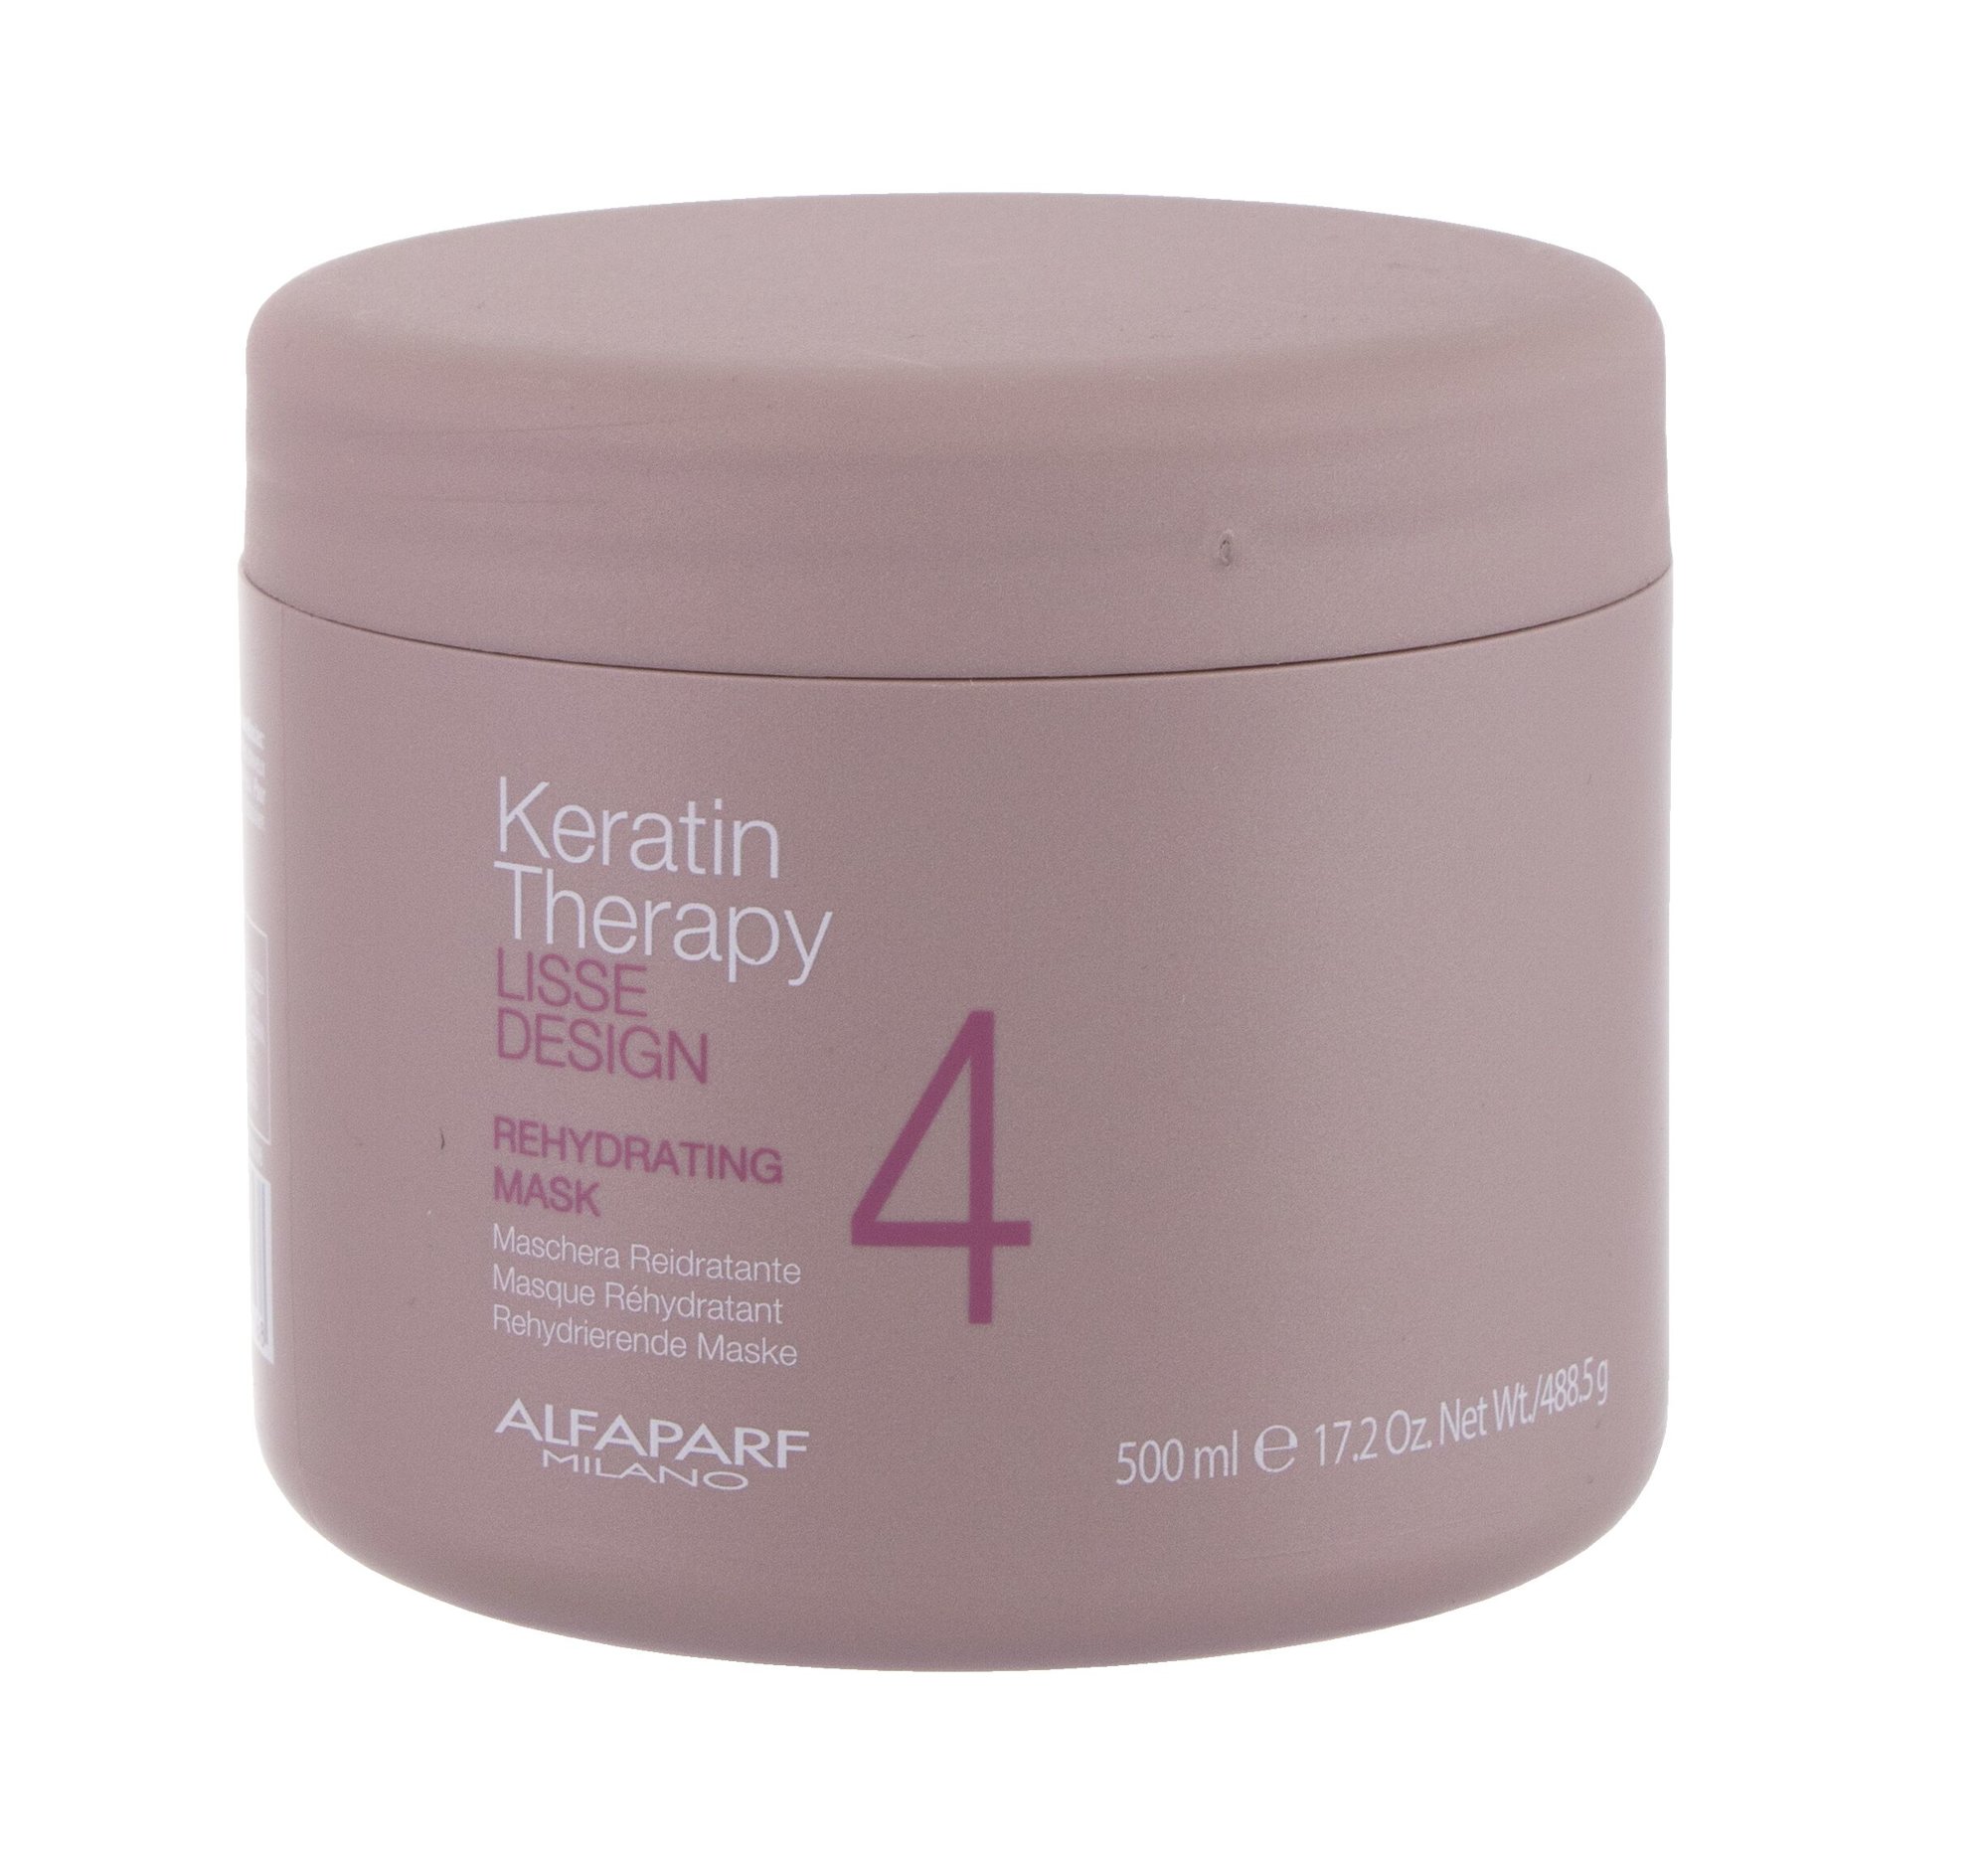 AlfaParf Milano Keratin Therapy Lisse Design Rehydrating plaukų kaukė